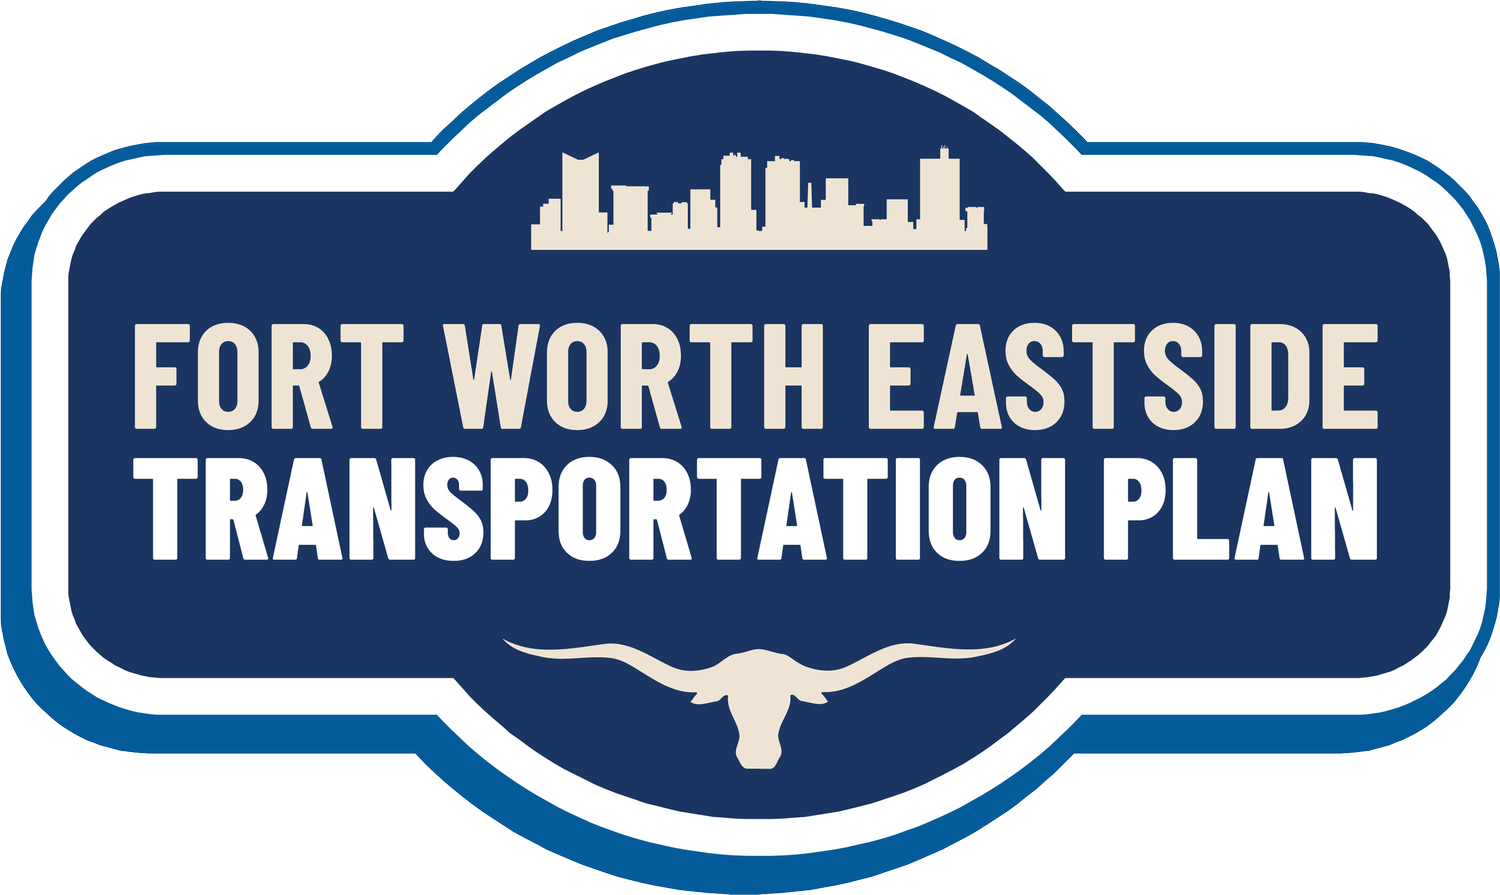 Fort Worth East Side Transportation Plan